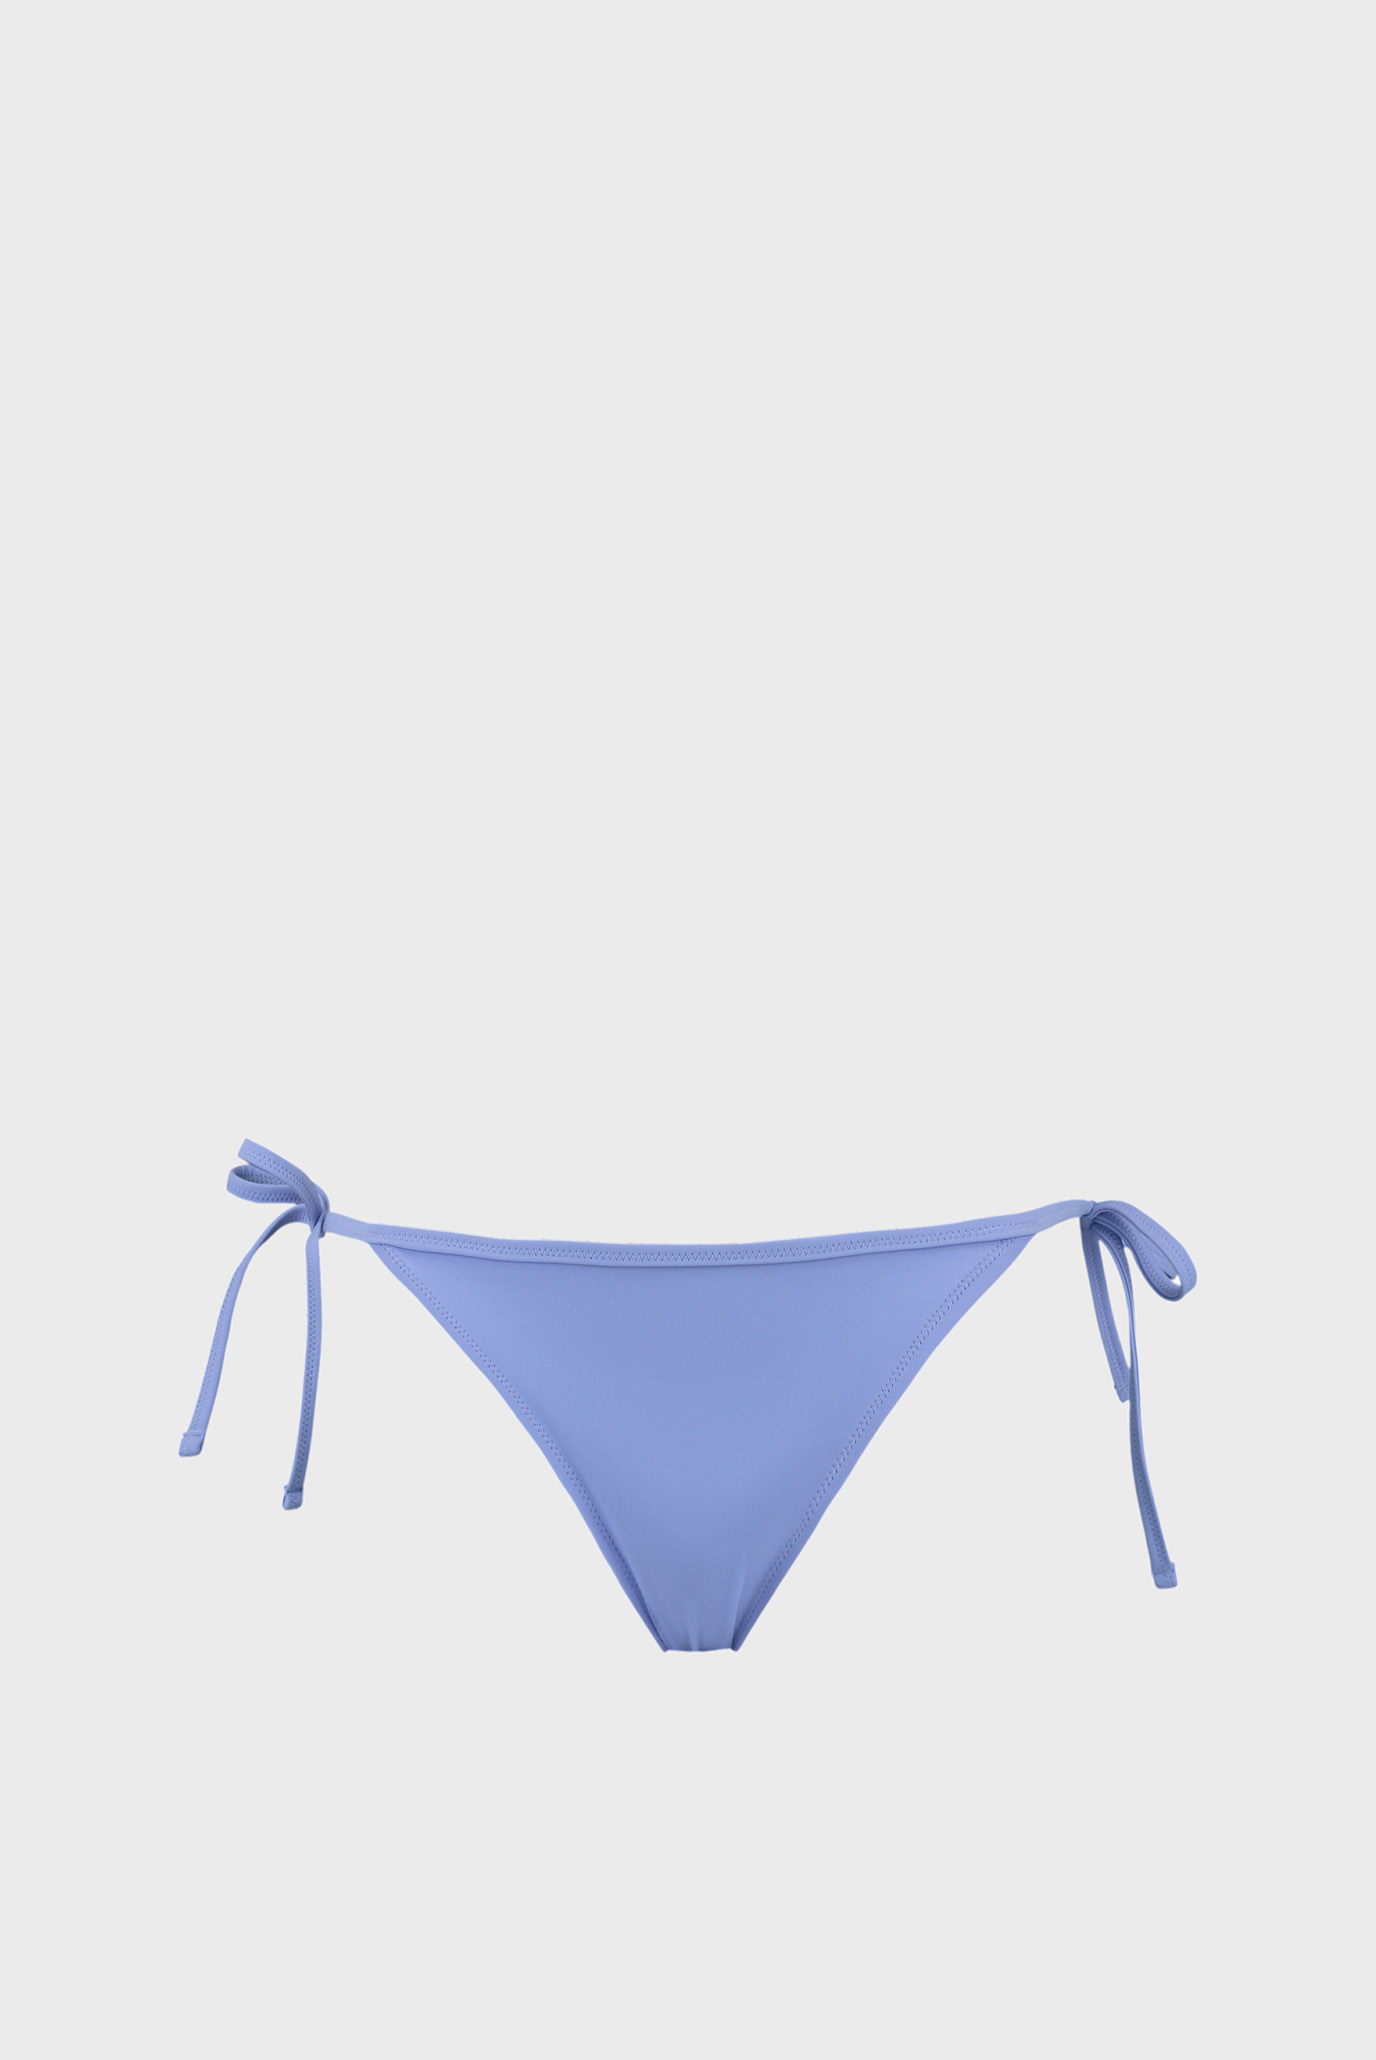 Жіночі сині трусики від купальника PUMA Swim Women Side Tie Bikini Bottom 1